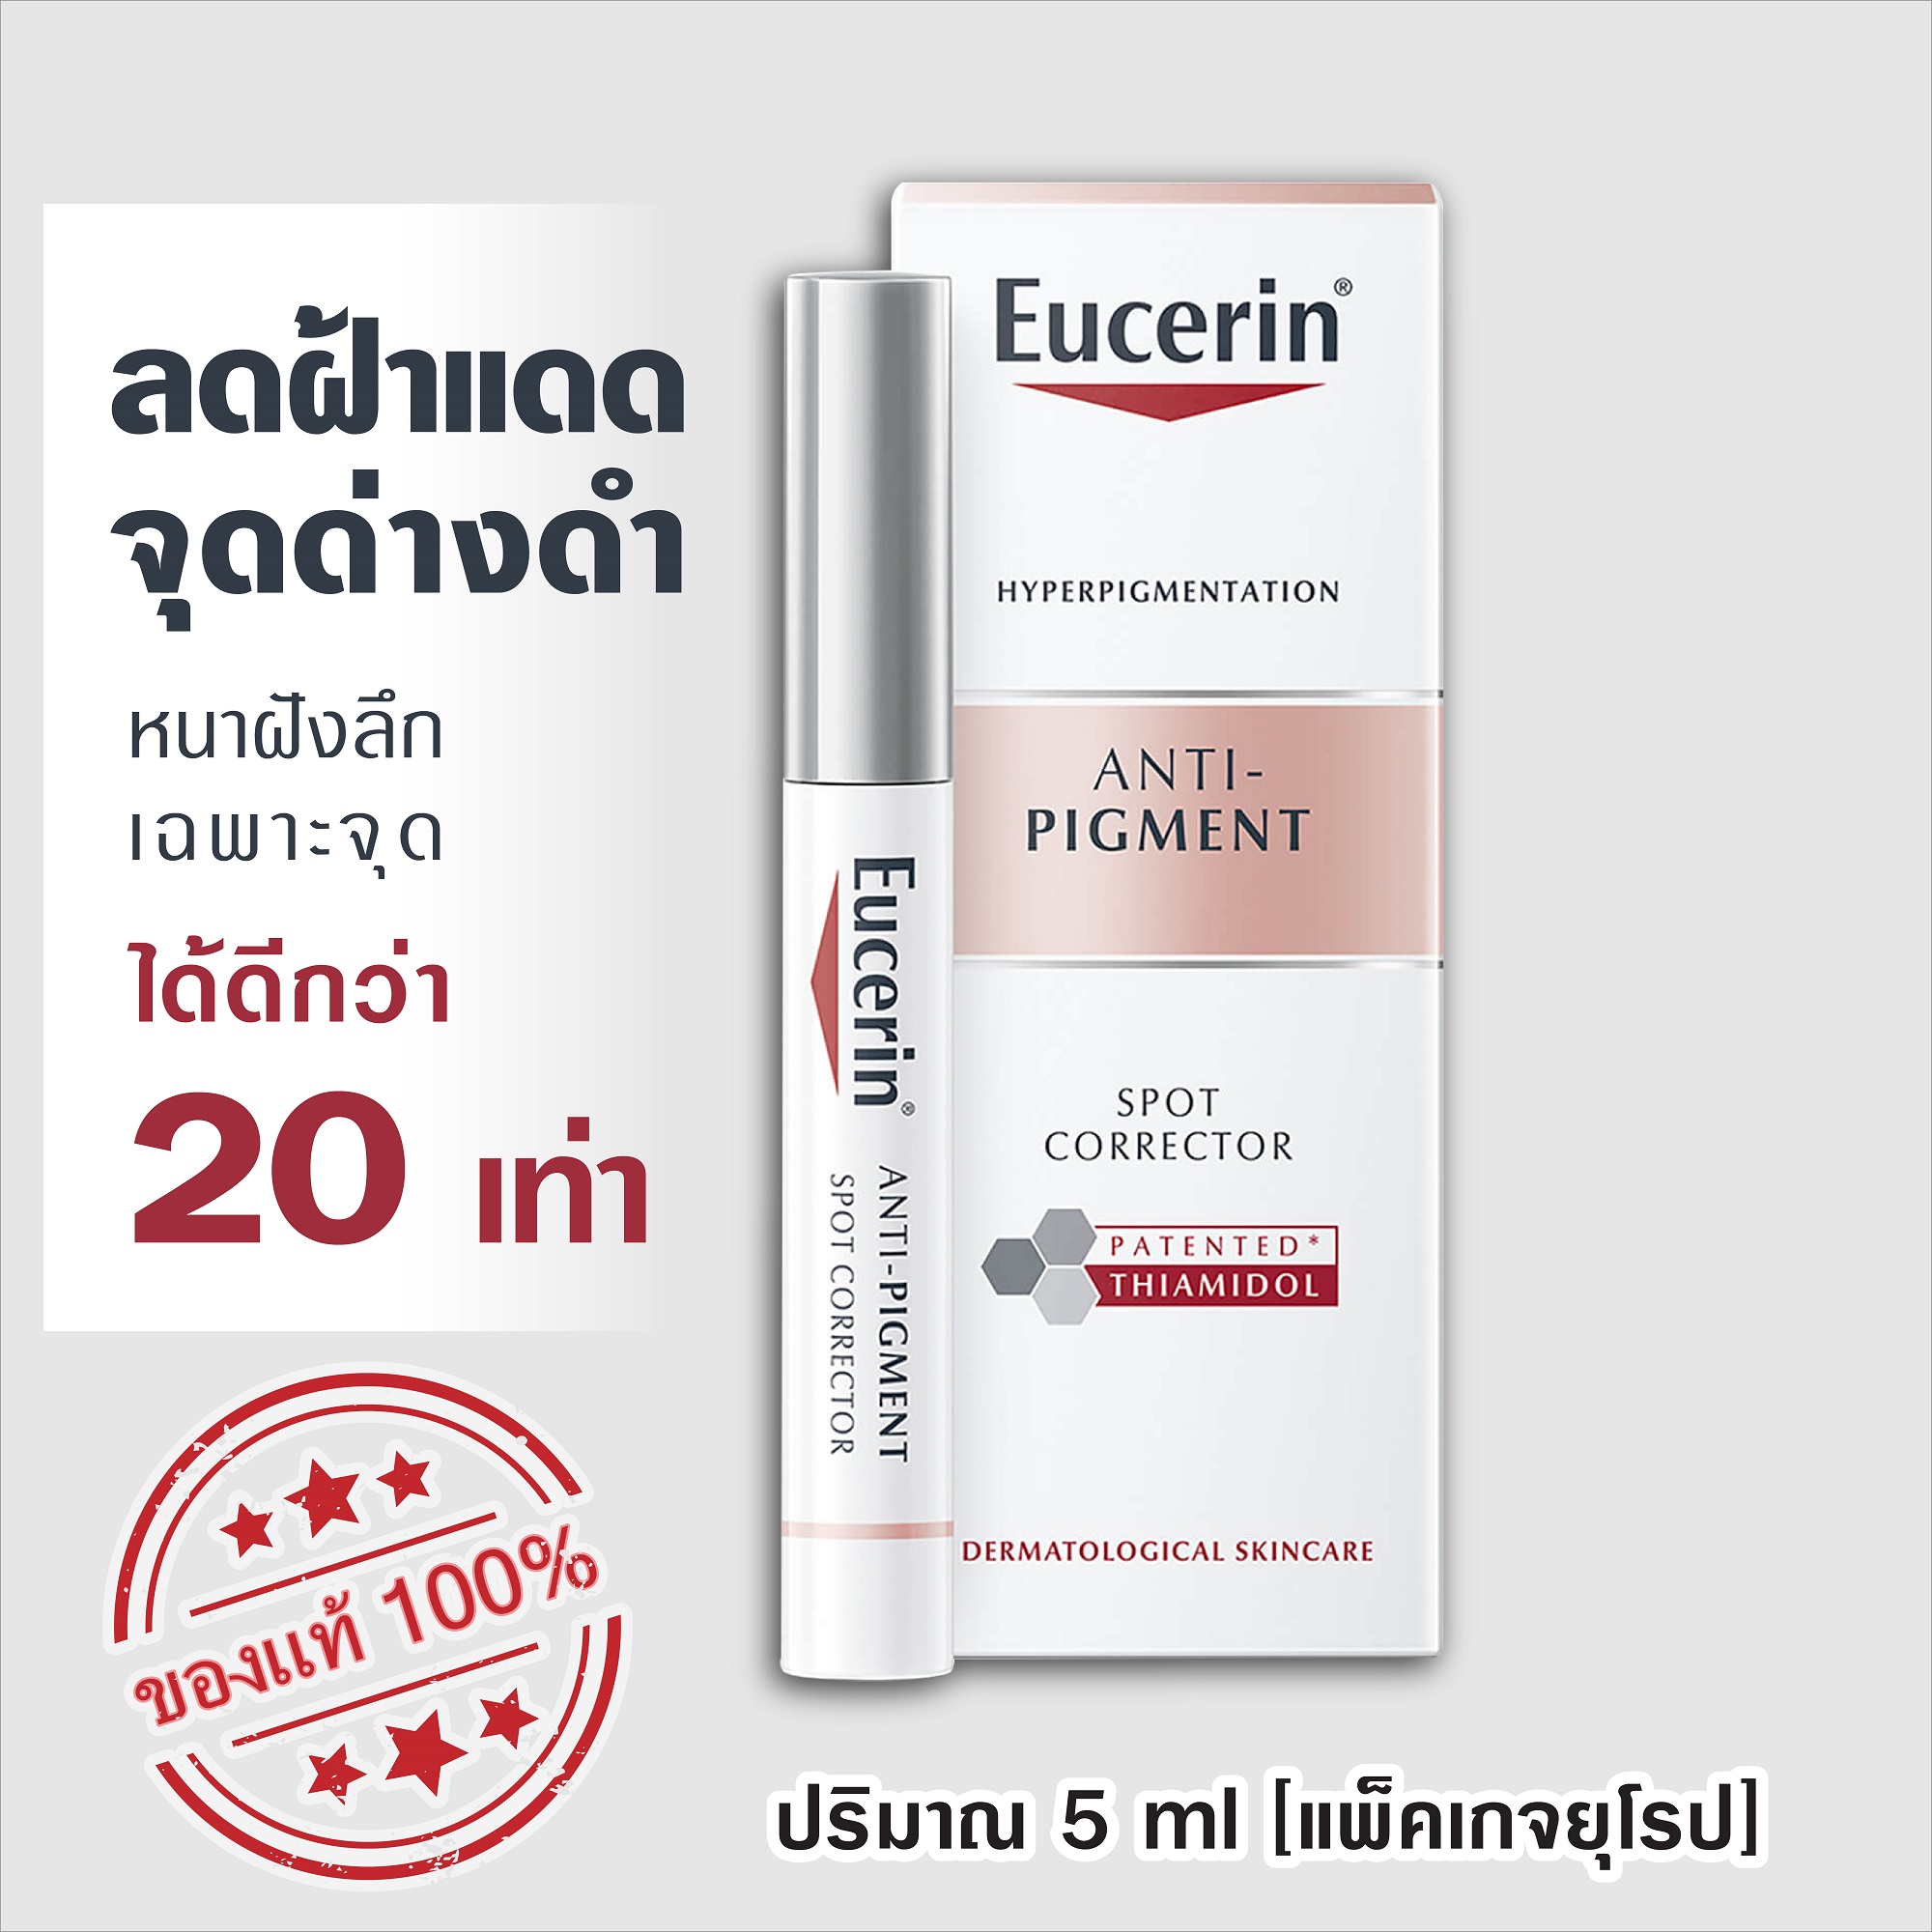 ราคา ยูเซอริน [EXP.11/2023-2024] Eucerin Anti-Pigment Spot Corrector//ULTRAWHITE+ SPOTLESS SPOT CORRECTOR 5ml [แพ็คเกจยุโรป] [ของแท้100% พร้อมส่ง]